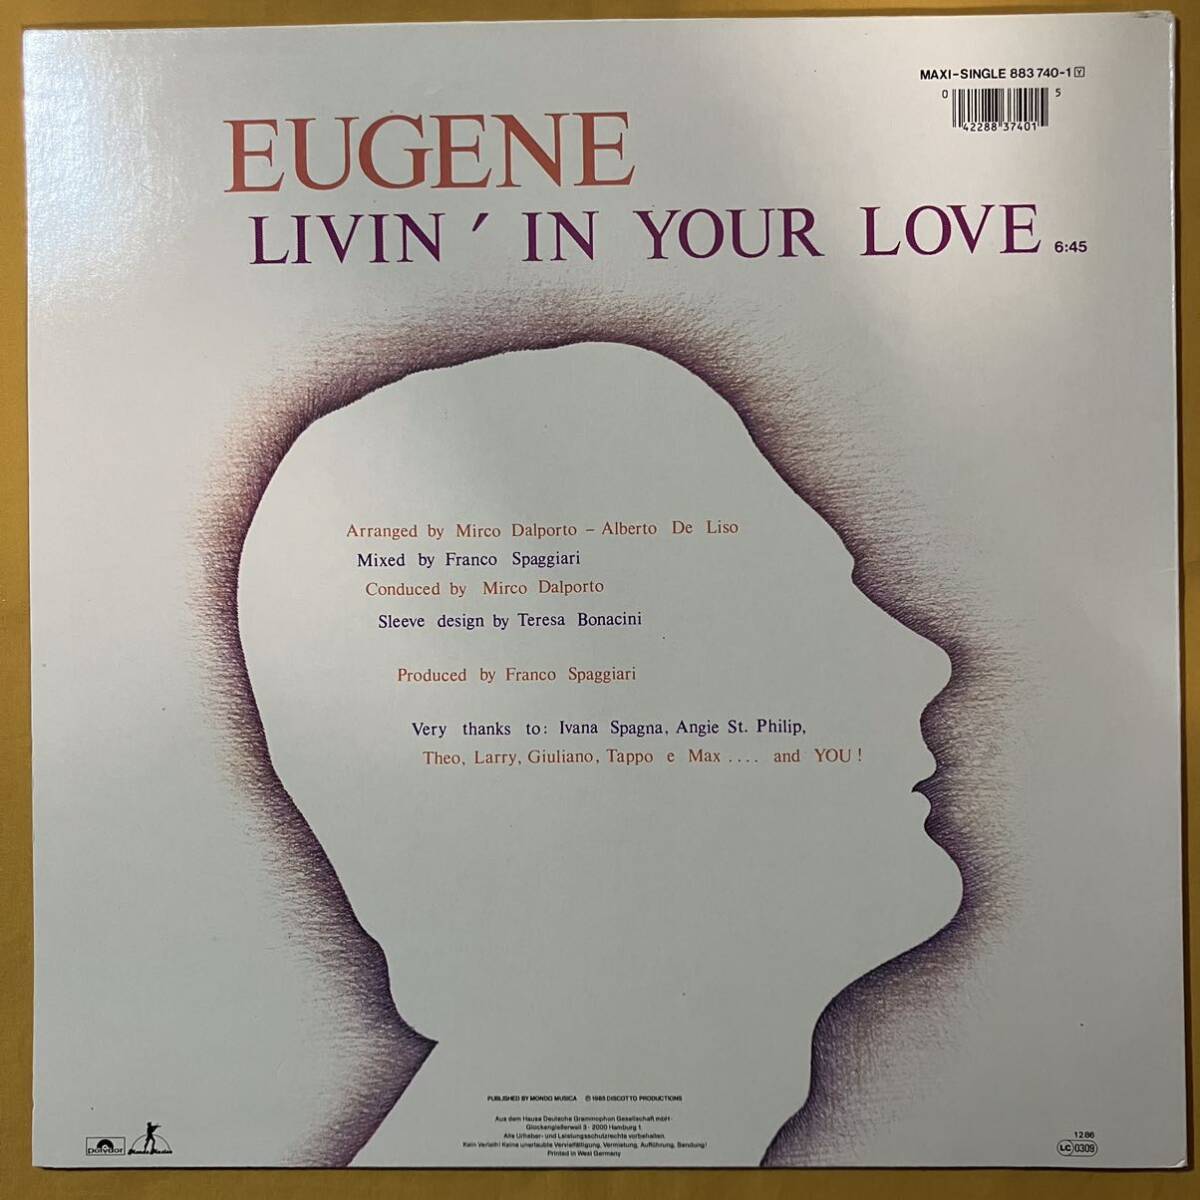 独盤 12インチ マキシシングル盤 ユージーン Eugene / Livin' In Your Love 883740-1 45RPM Italo Disco レコード アナログ盤 Maxi-Singleの画像3